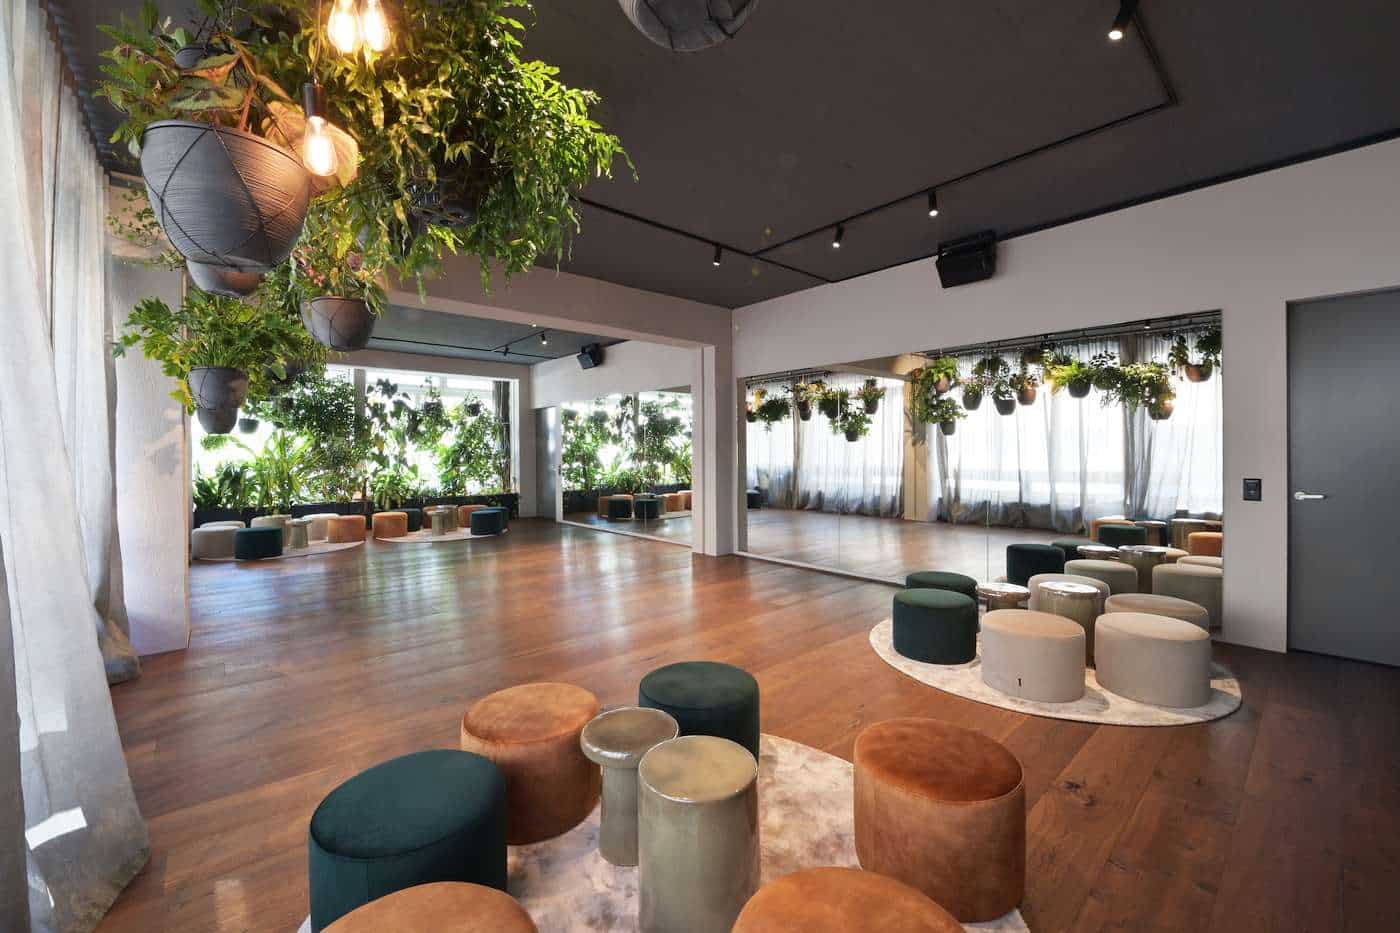 Zürich Raum mieten: heller Raum (Lounge) mit vielen Pflanzen und langer Spiegelwand für Yoga, Aperitif oder Meetings